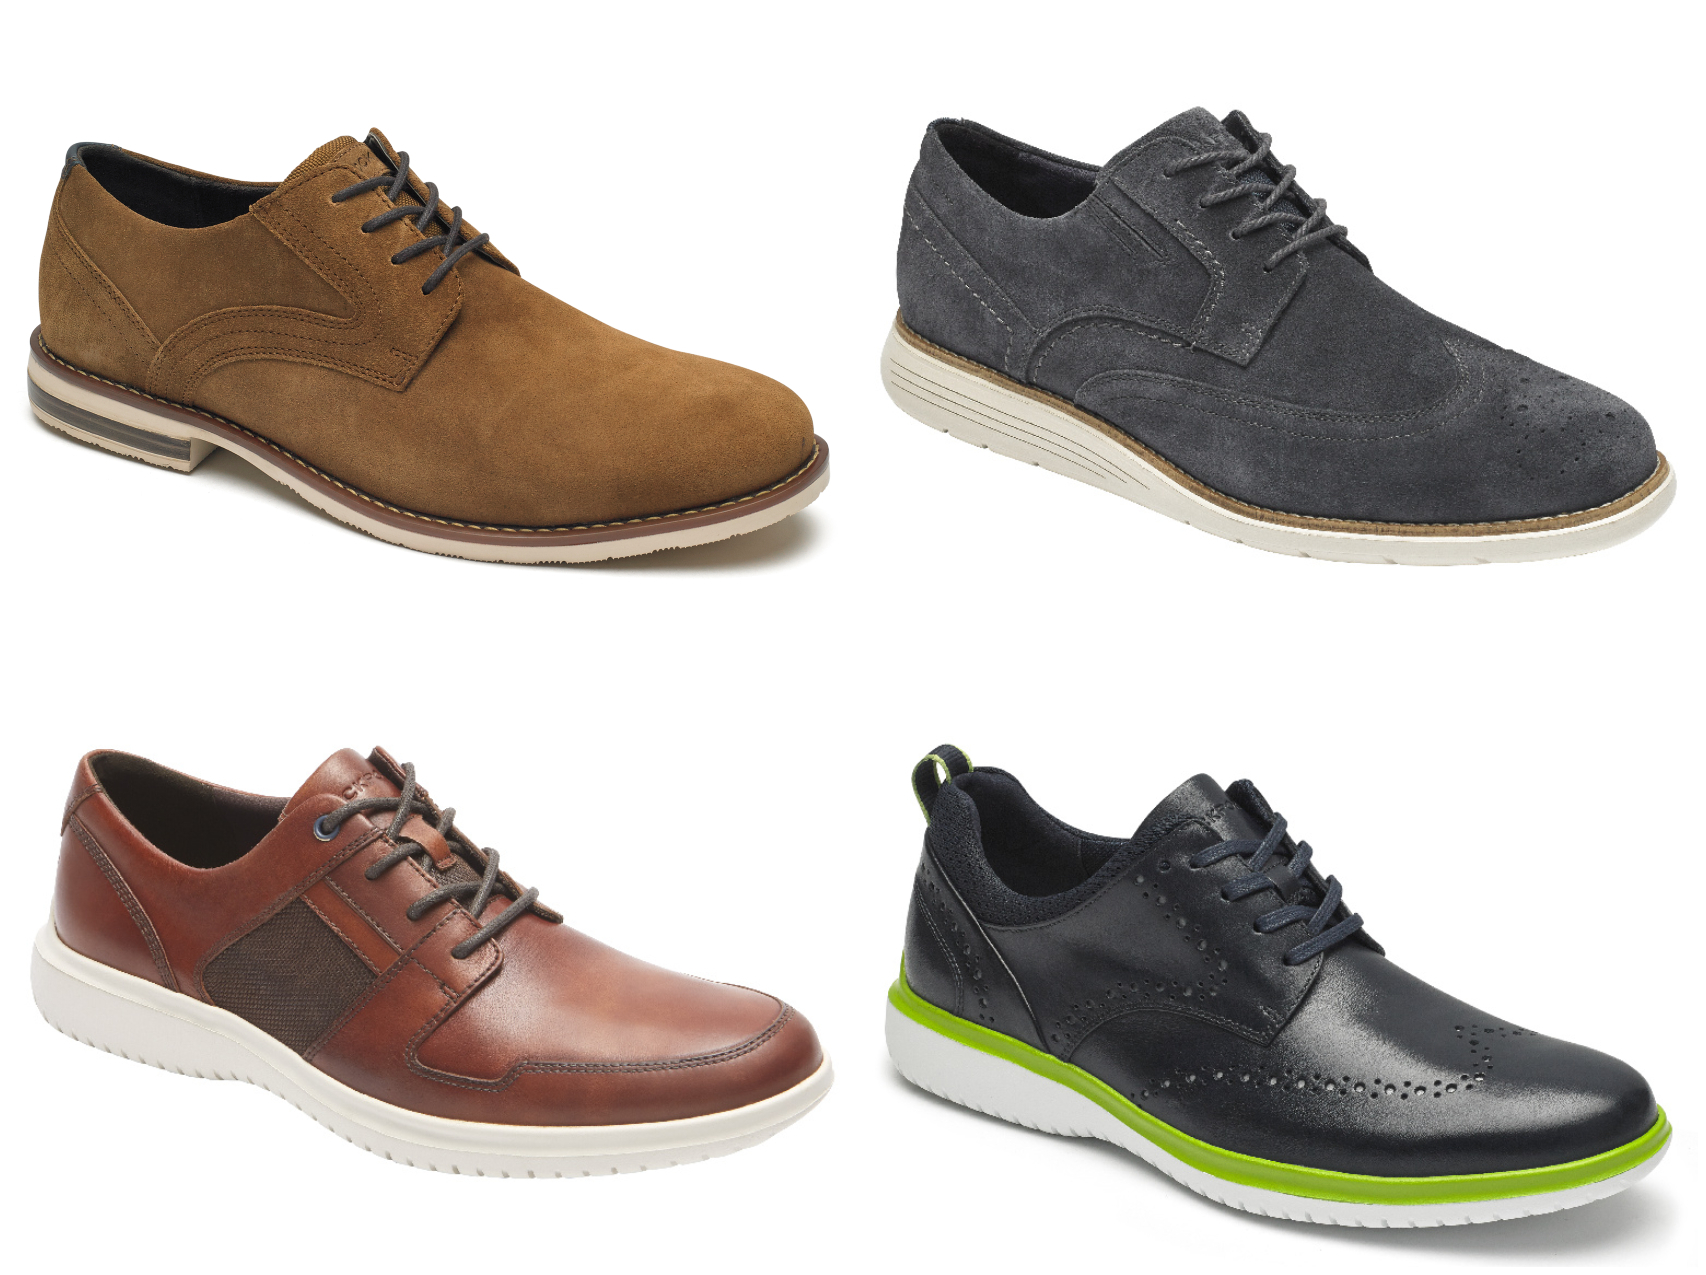 Los 5 modelos de zapatos para hombre que regalar en Navidad